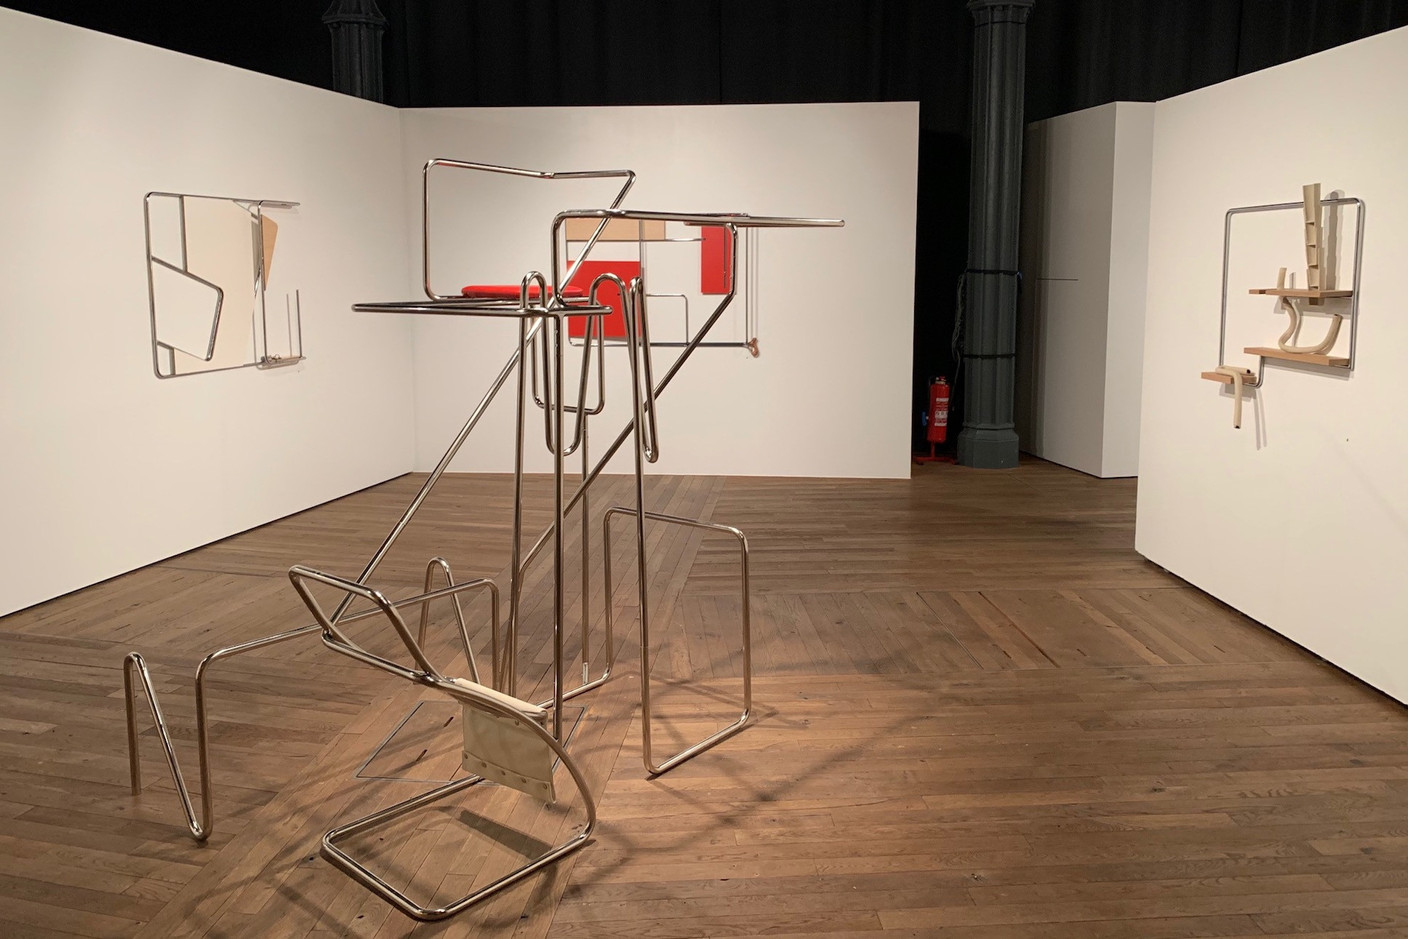 L’exposition «Sutil Olvido» d’Hisae Ikenaga, présentée jusqu’au 29/11 aux Rotondes, interroge avec brio, subtilité, poésie et une pointe d’ironie le rapport entre objets, art et artisanat…   (Photo: Maison Moderne)